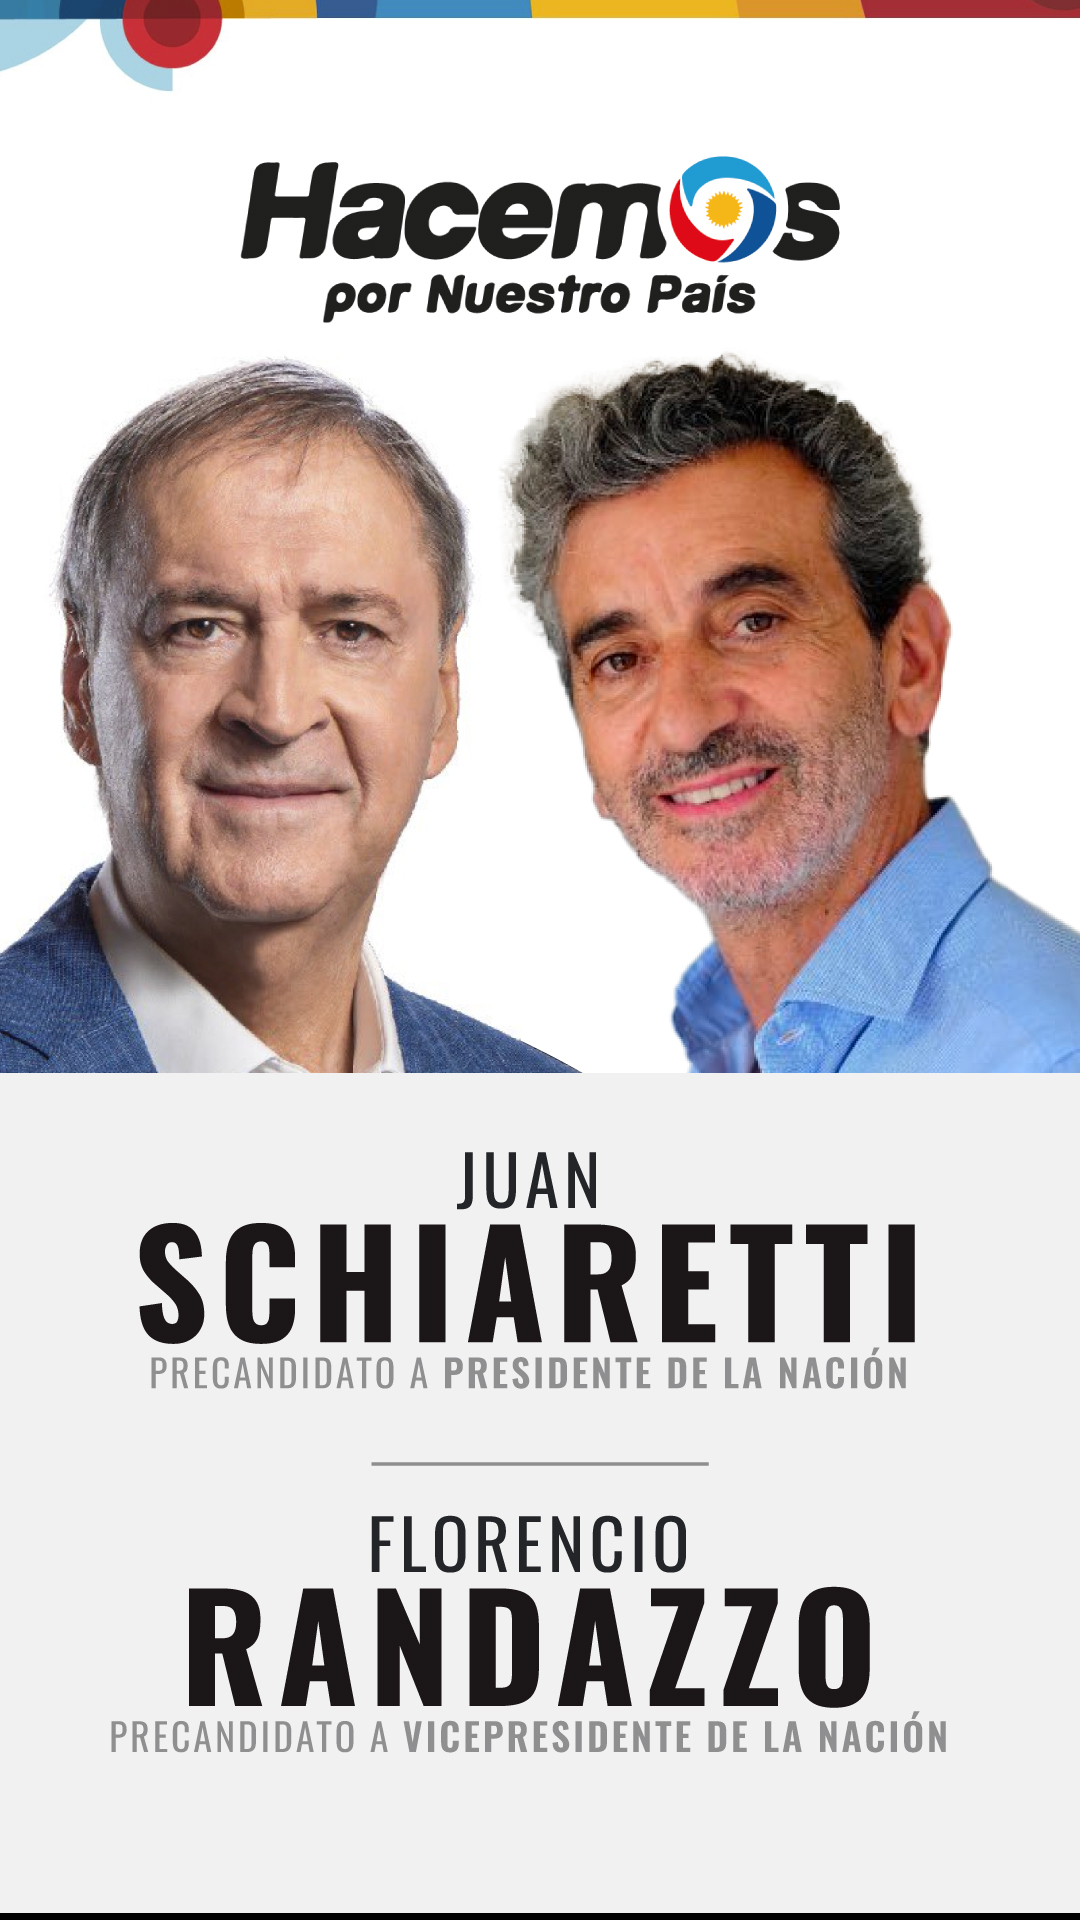 Juan Schiaretti y Florencio Randazzo 